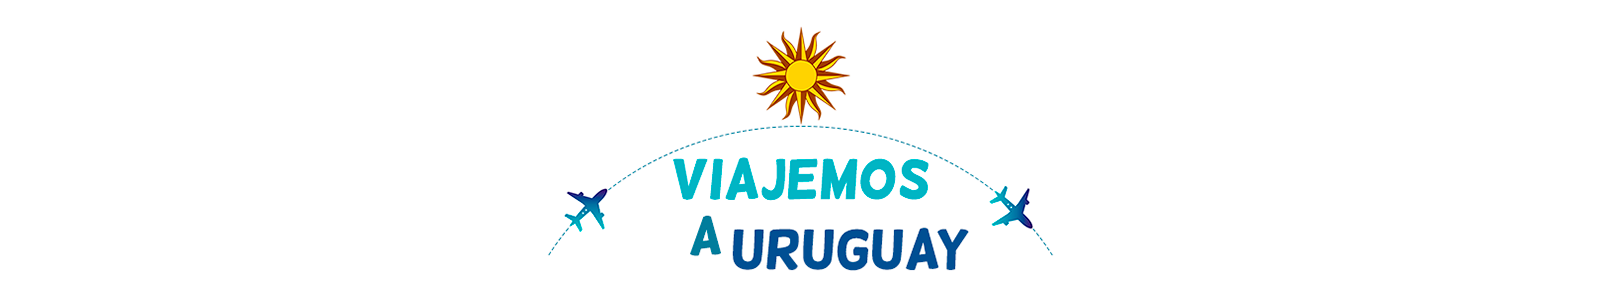 Viajemos a Uruguay